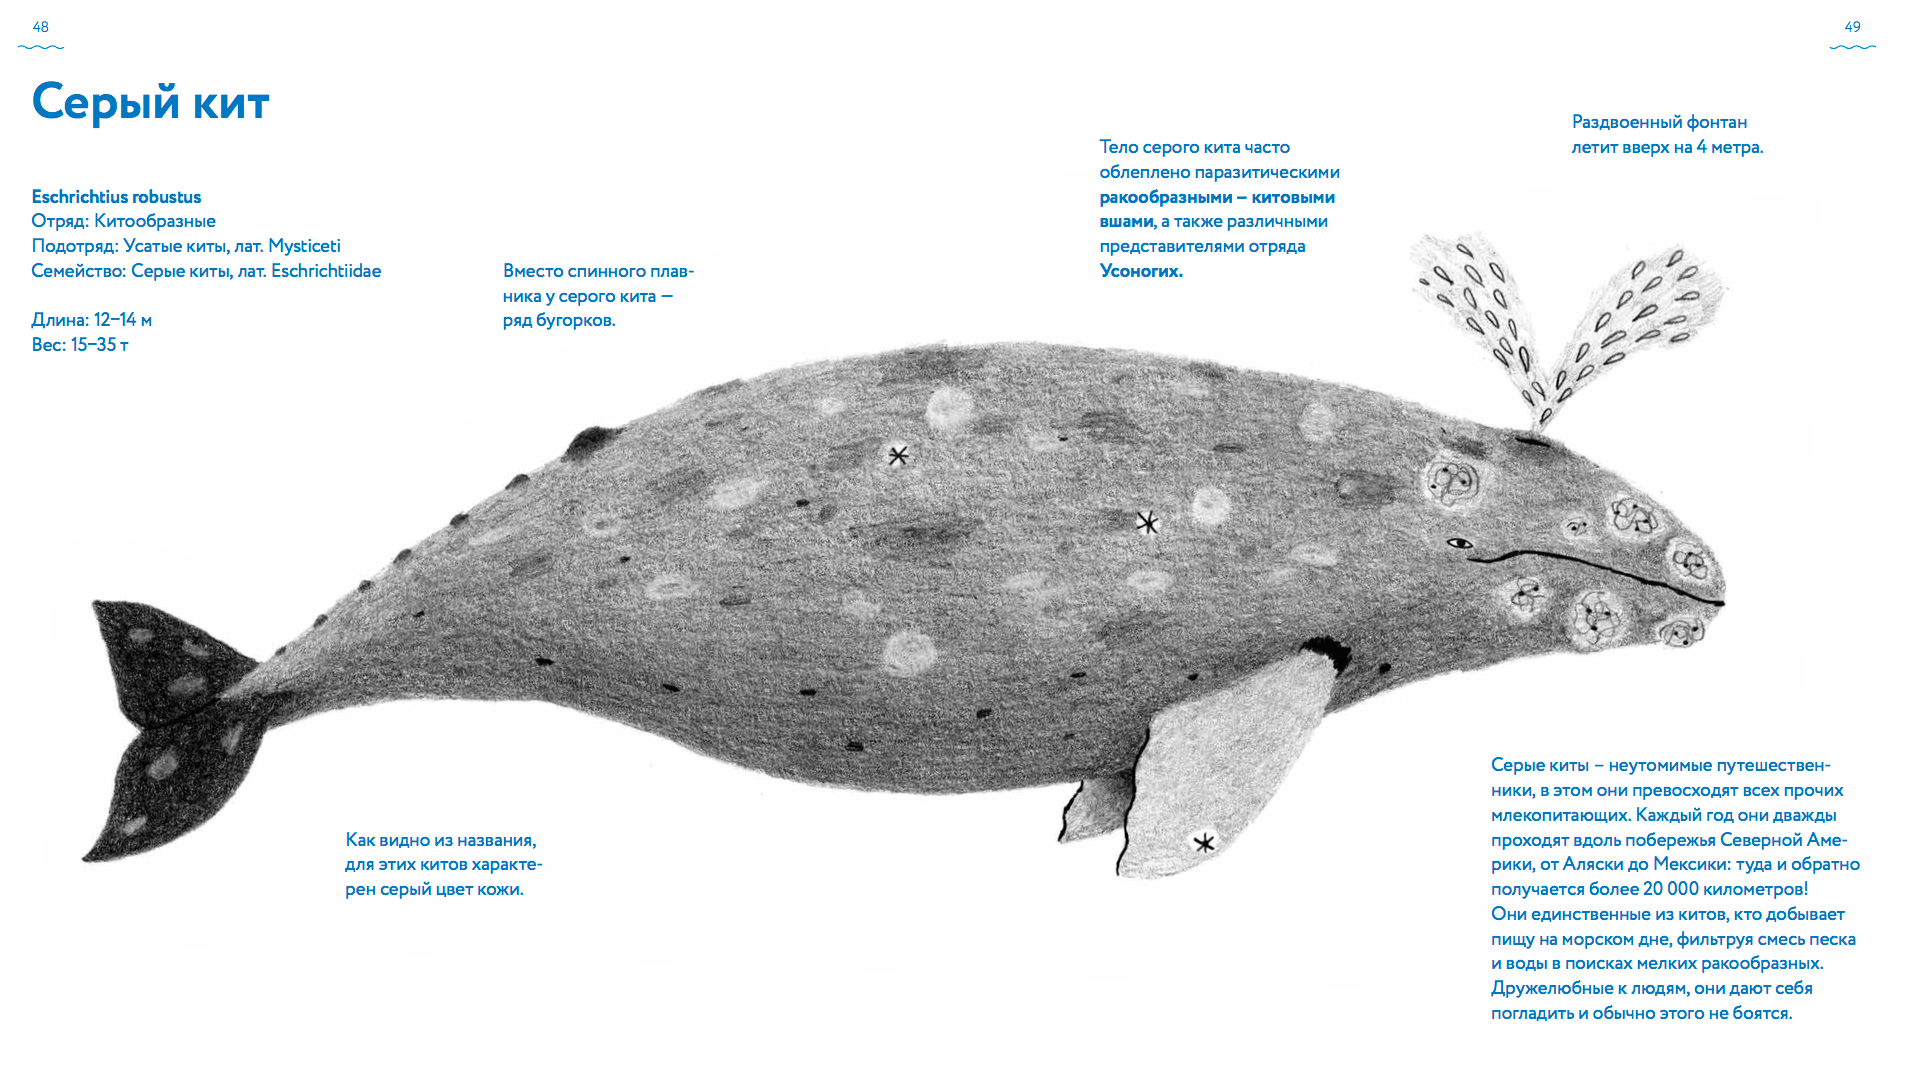 Иллюстрация из главы «Серый кит»